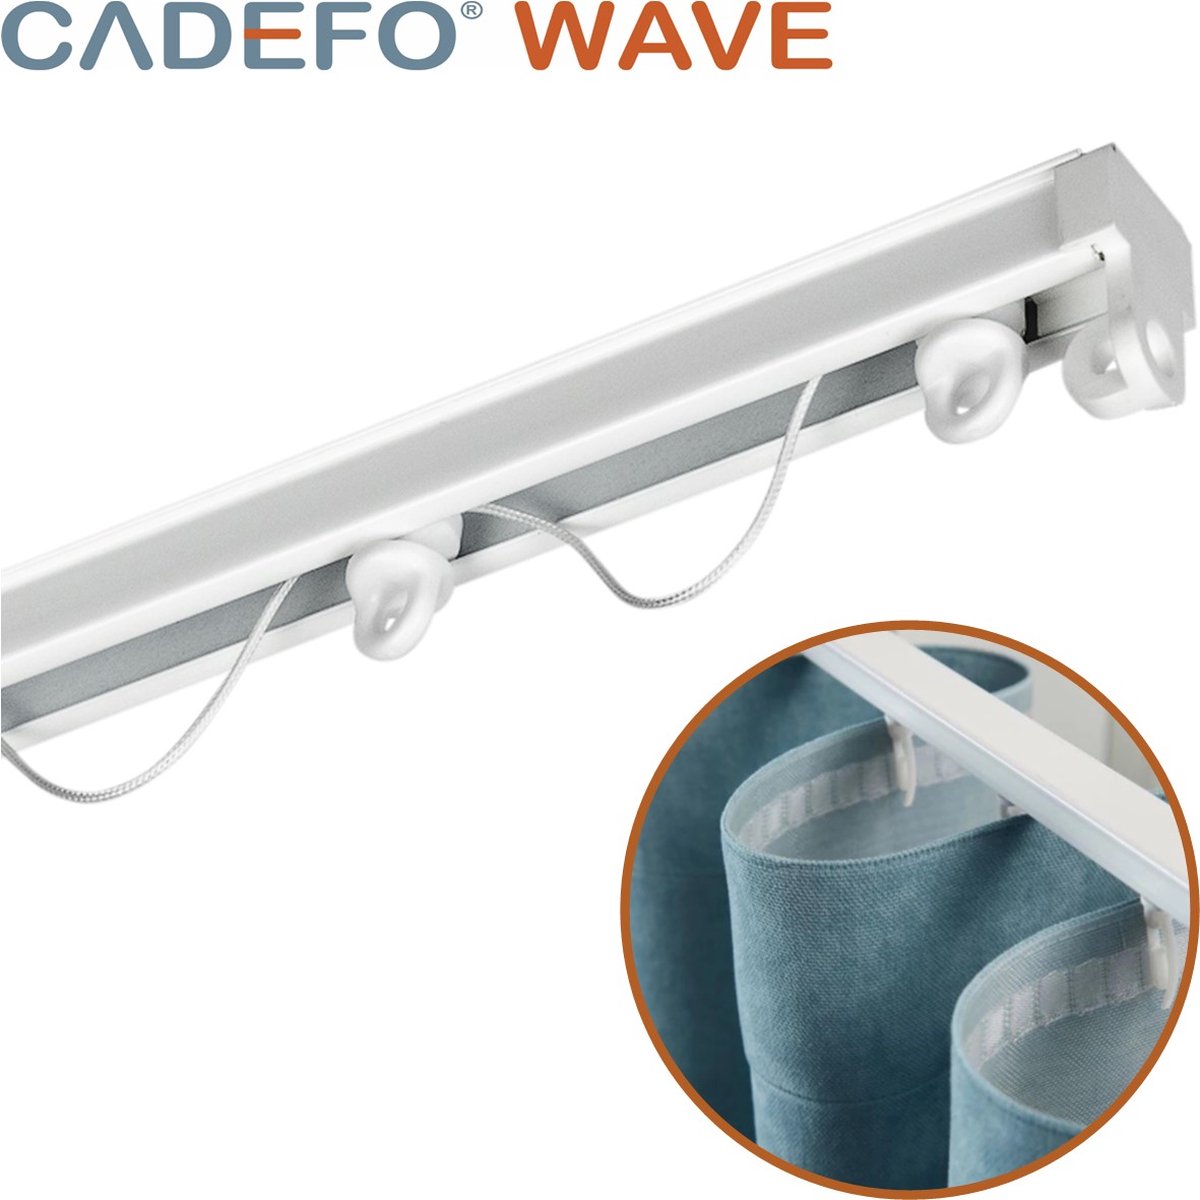 CADEFO WAVE (401 - 450 cm) Gordijnrails - Compleet op maat! - UIT 1 STUK - Leverbaar tot 6 meter - Plafondbevestiging - Lengte 423 cm